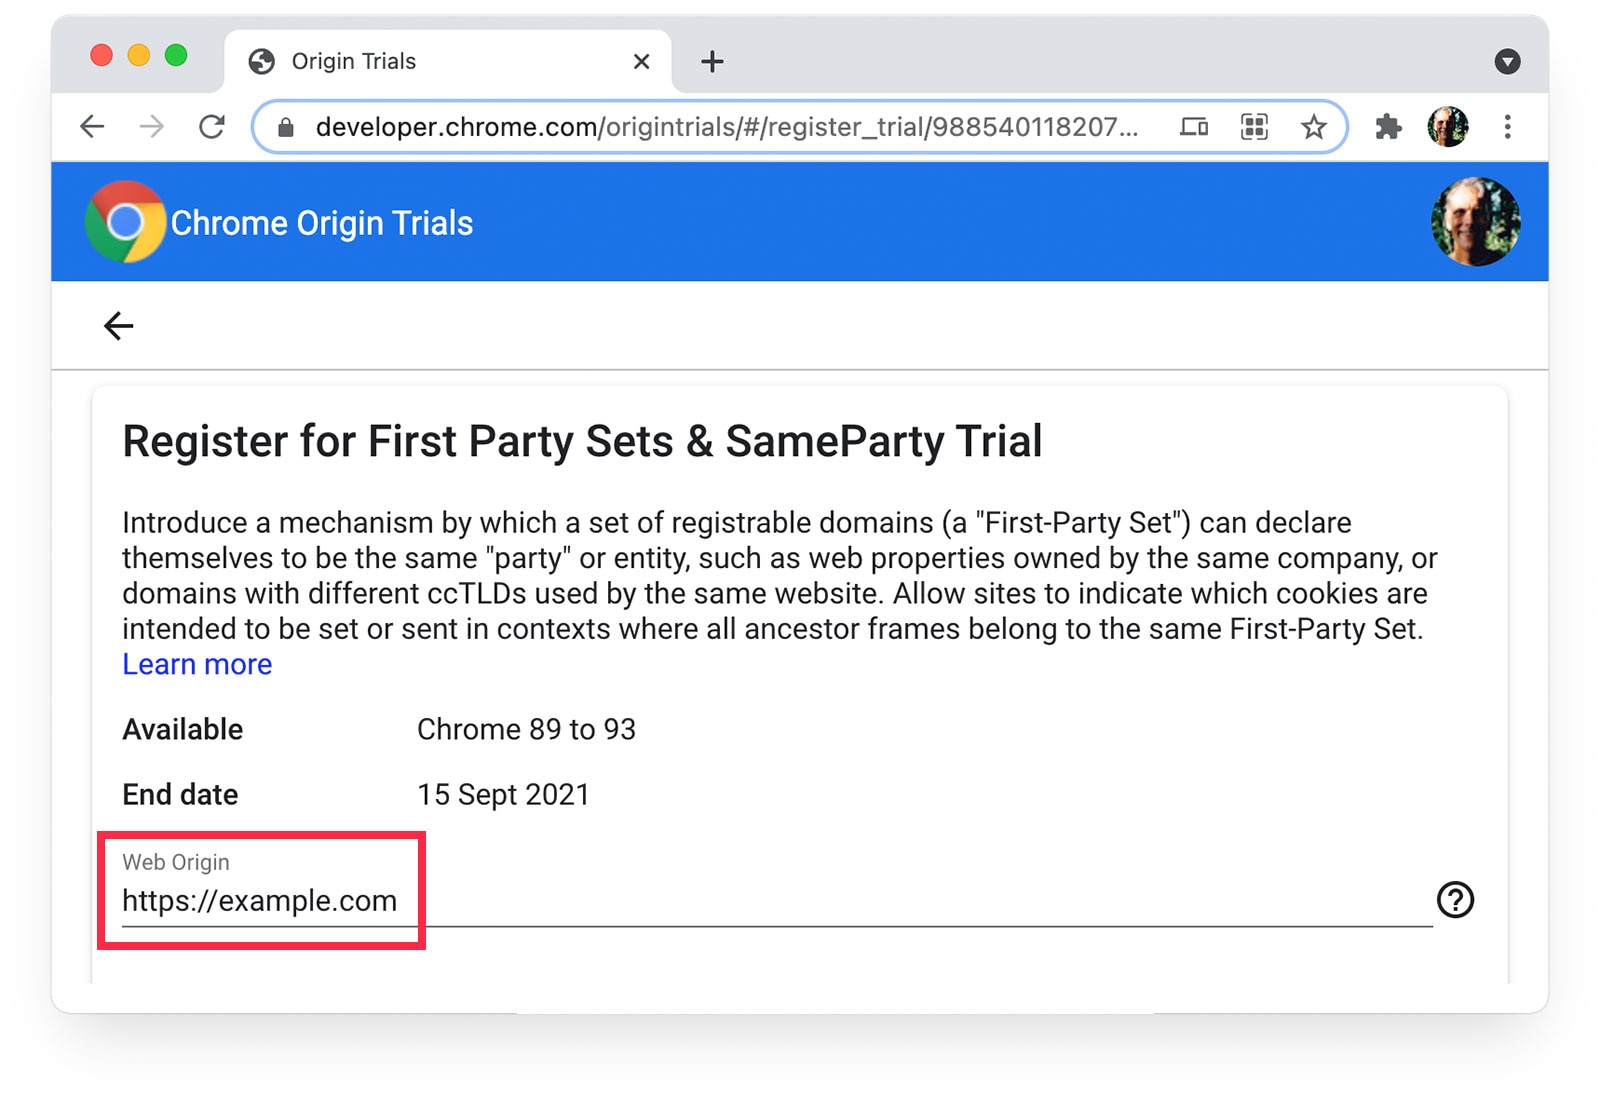 صفحه آزمایشی مبدأ Chrome که نشان می دهد https://example.com به عنوان مبدا وب انتخاب شده است.